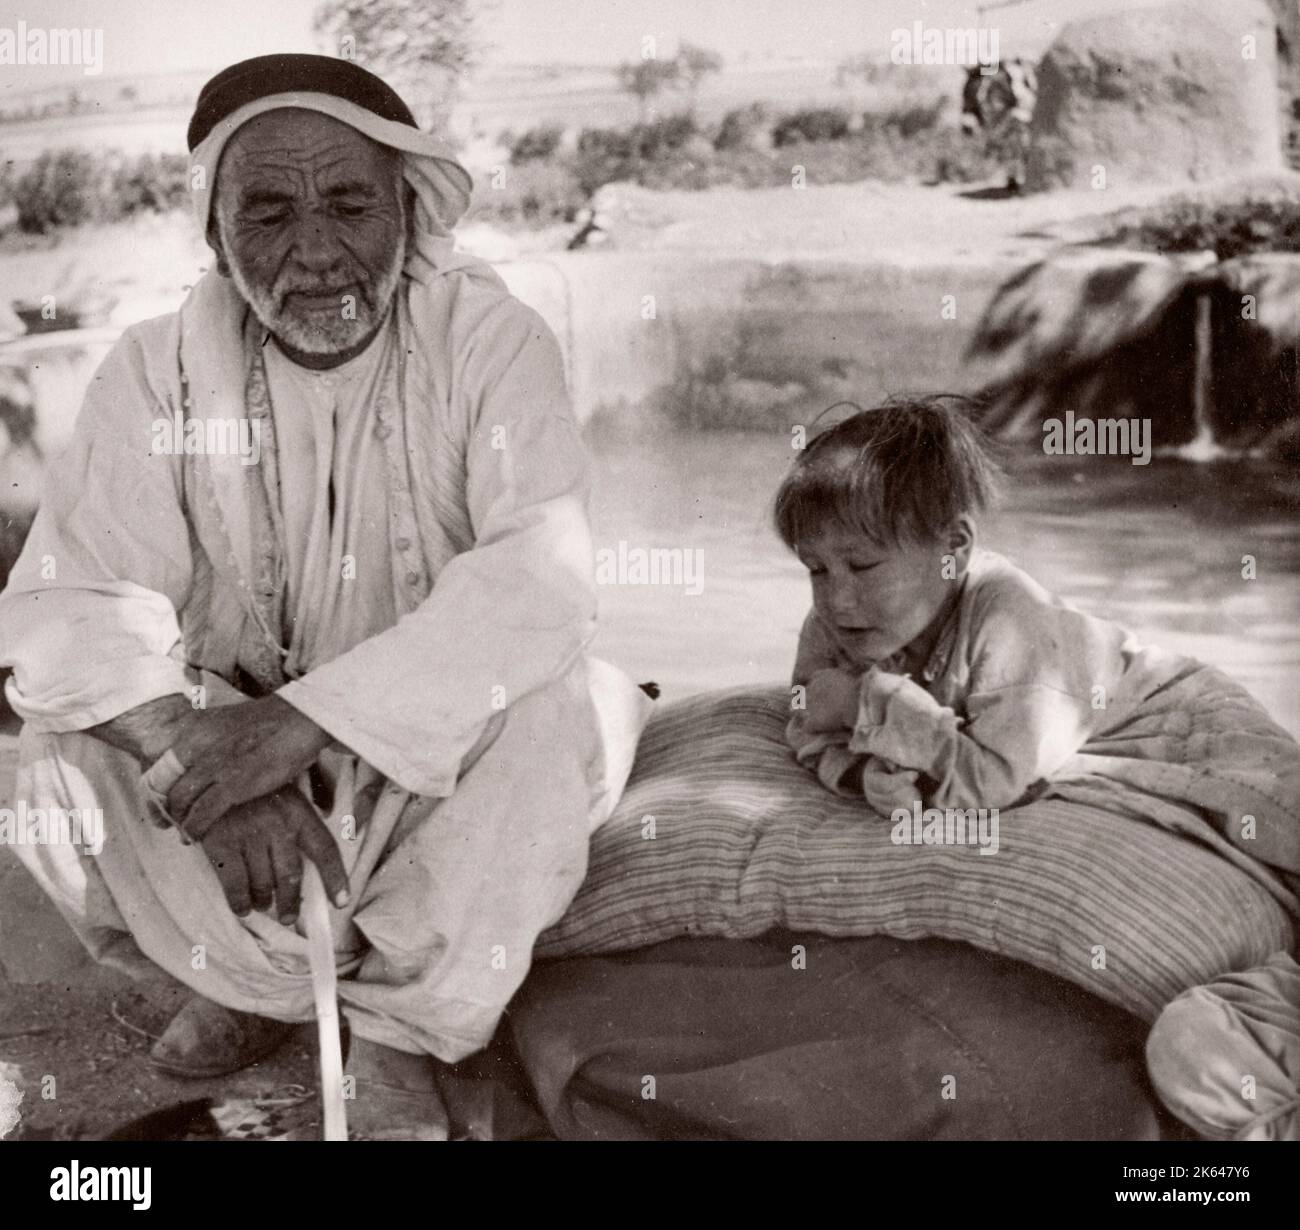 1943 Syrie - homme et garçon souffrant de Trachoma Photographie par un officier de recrutement de l'armée britannique stationné en Afrique de l'est et au Moyen-Orient pendant la Seconde Guerre mondiale Banque D'Images